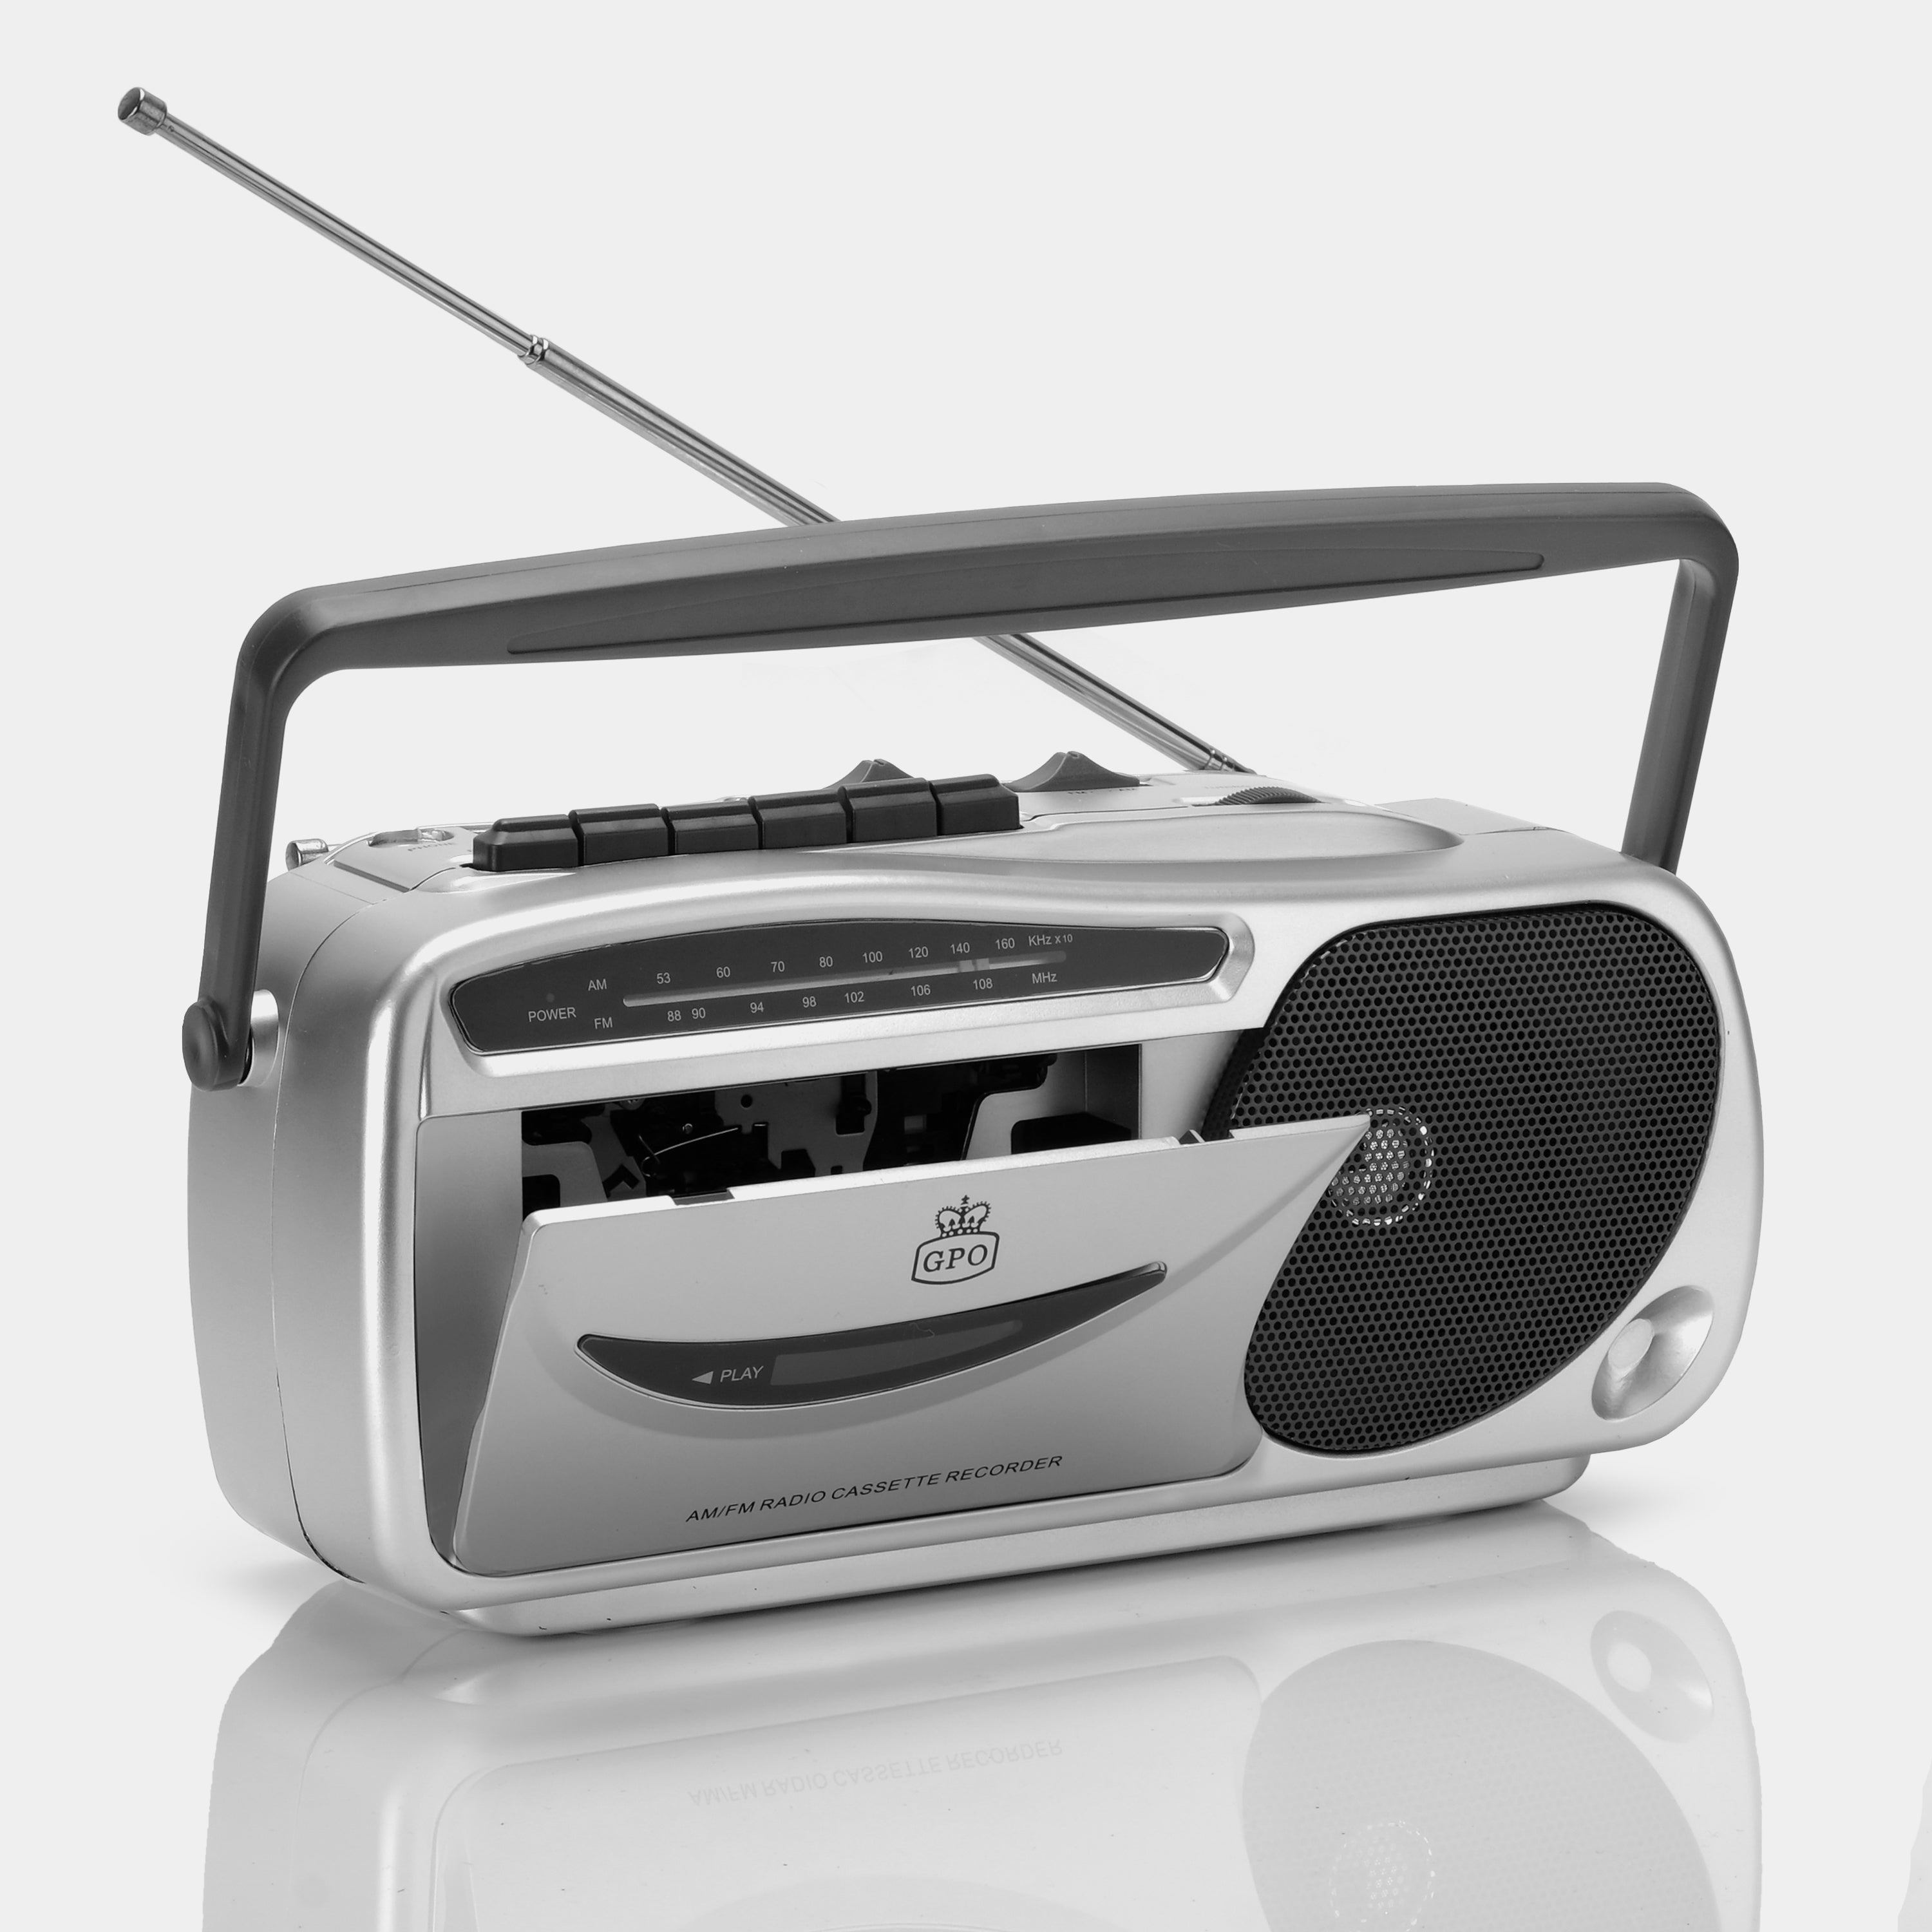 GPO Retro GPO 9401 Portable AM/FM Radio Cassette Recorder Player